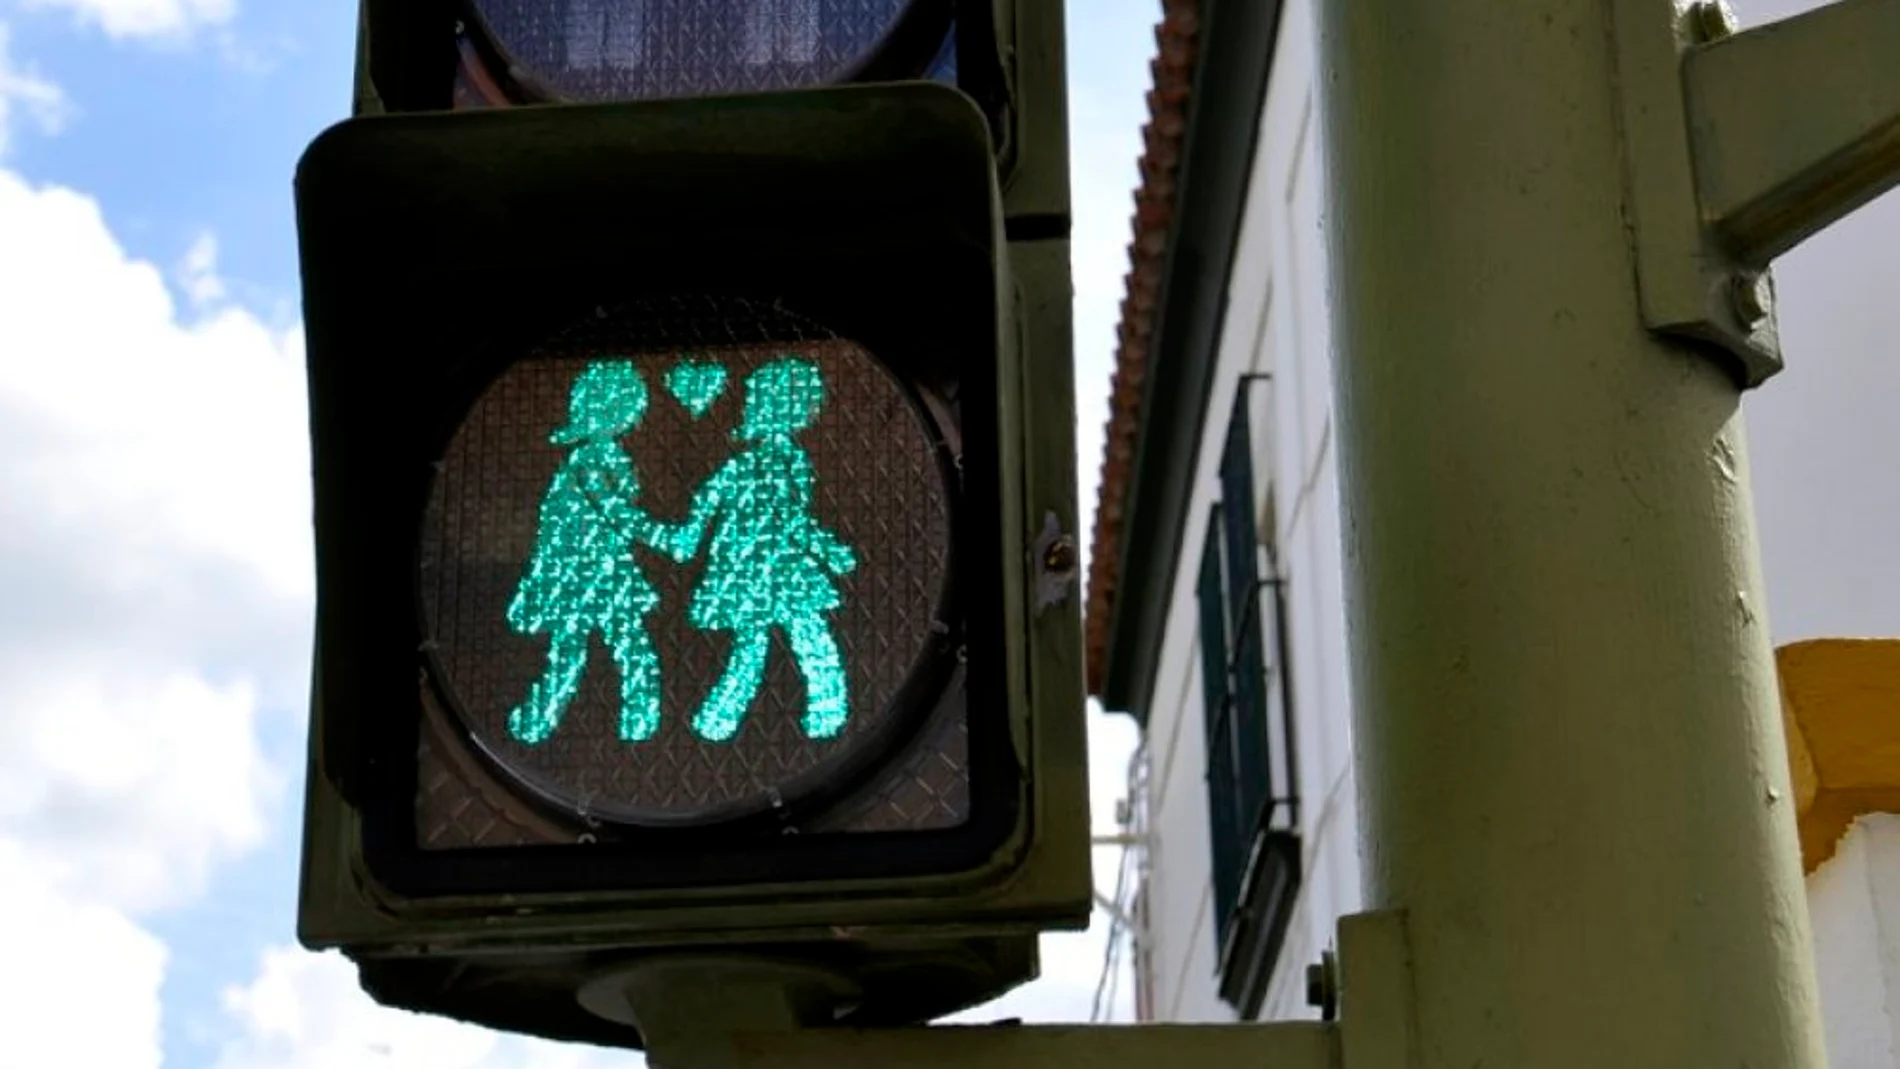 Semáforos «gay friendly» en el centro. La localidad gaditana de San Fernando estrenó el día 14 semáforos «inclusivos», que Carmena quiere copiar para el World Pride